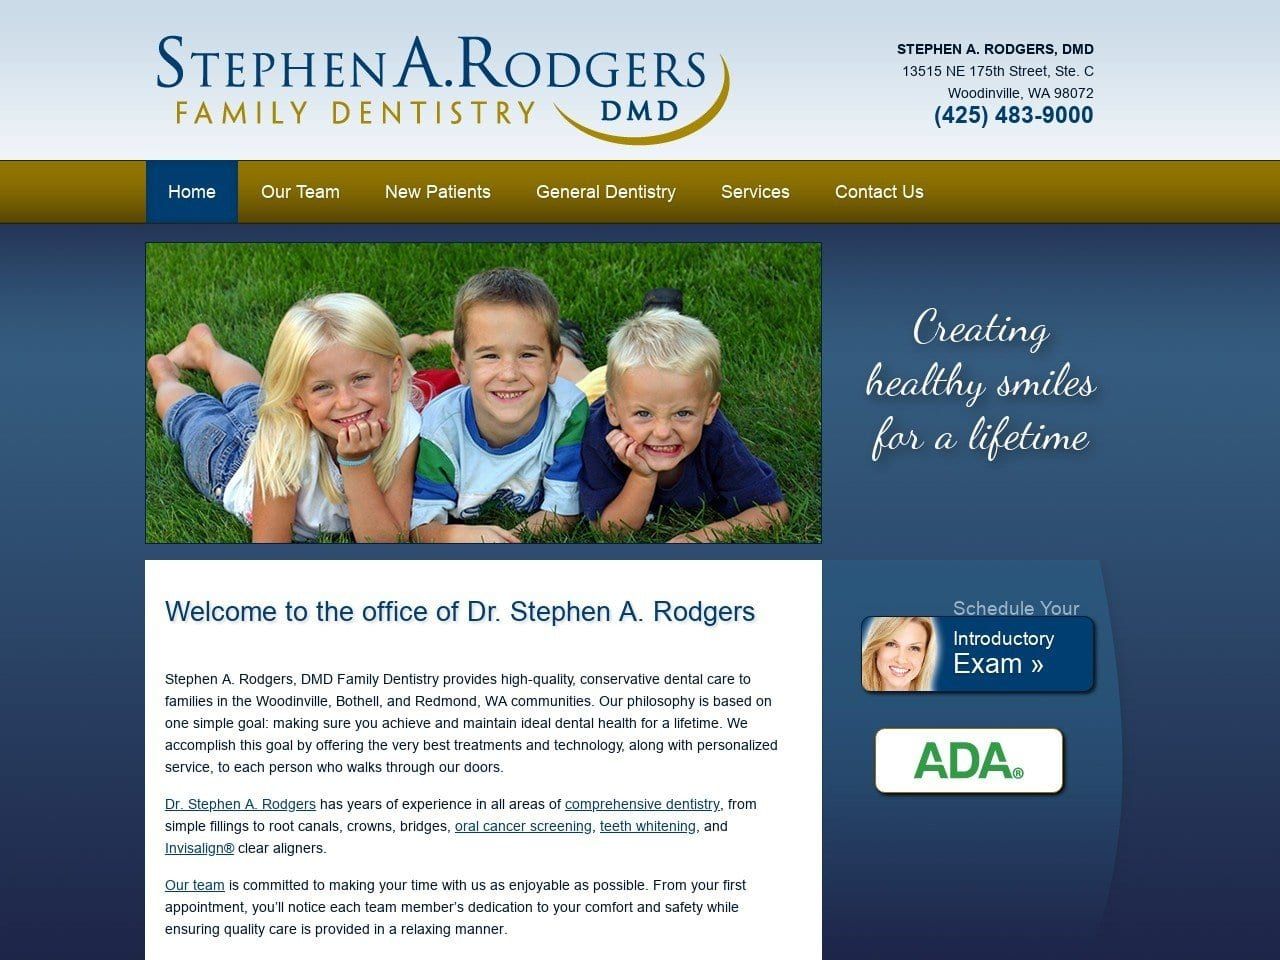 Stephen A. Rodgers DMD Website Screenshot from woodinvilledental.com